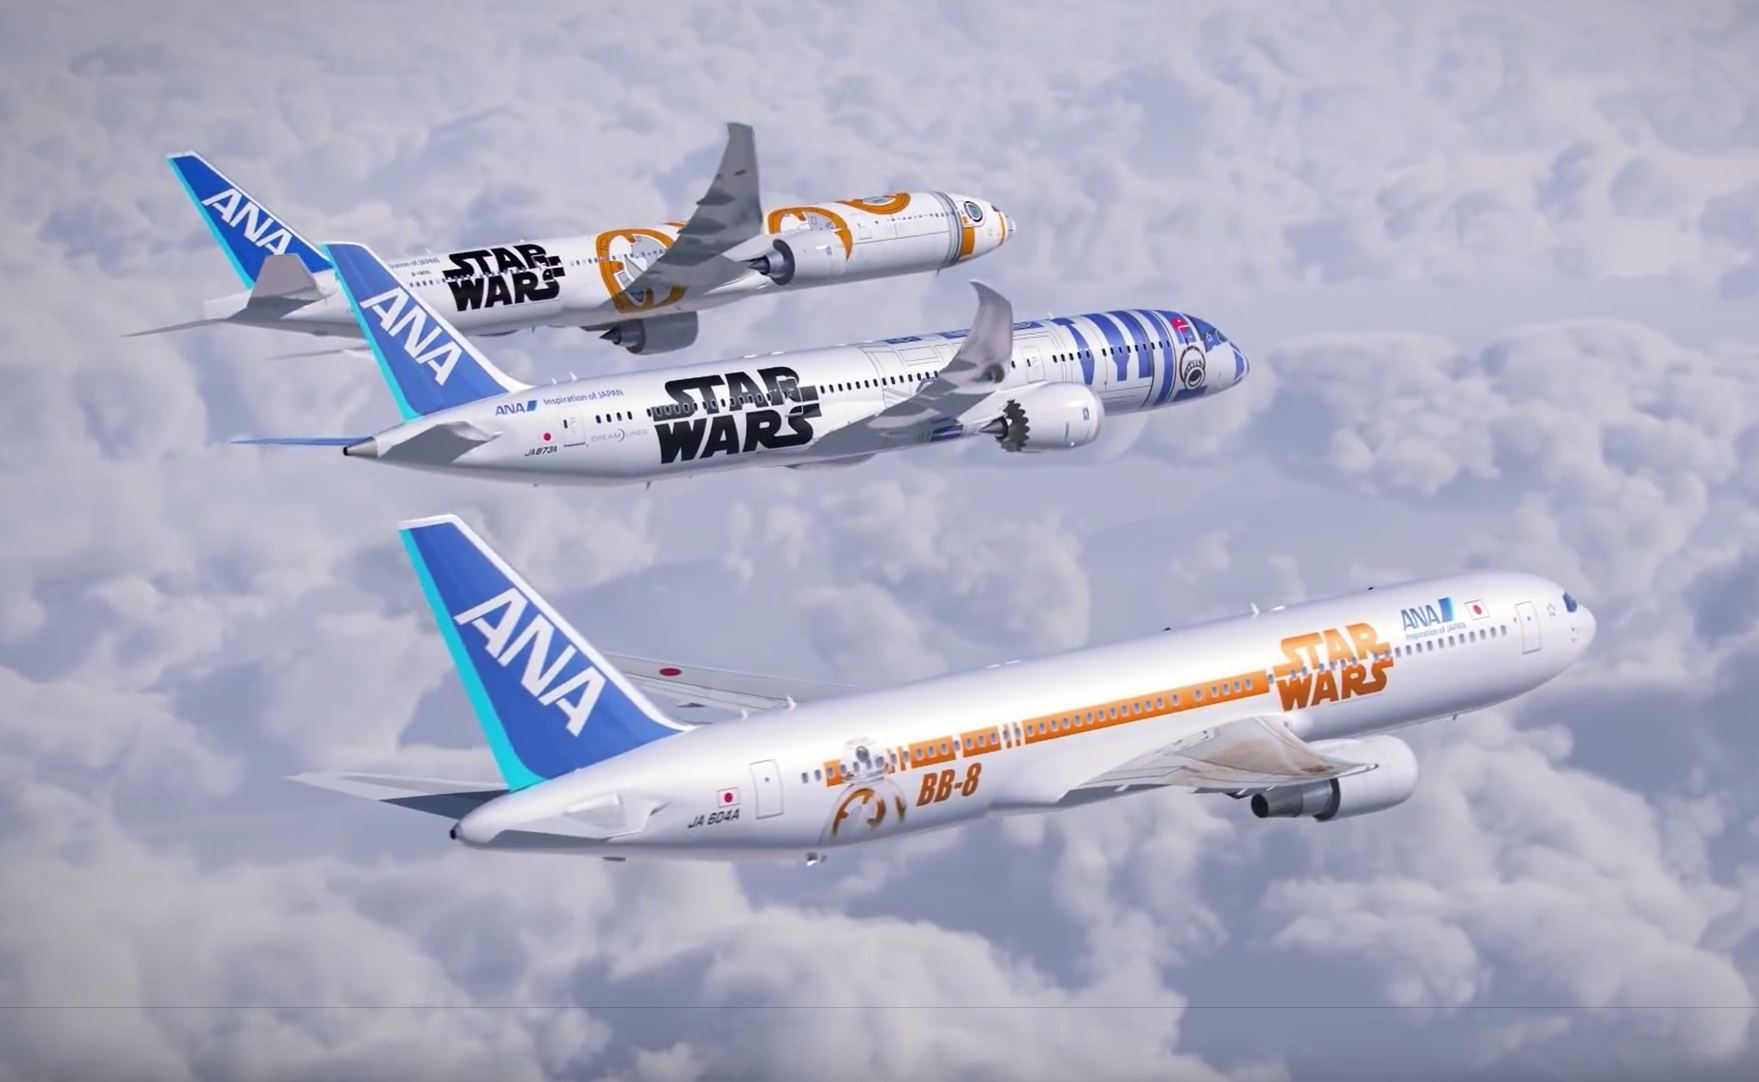 ANA Star Wars Jets: R2-D2 & Star Wars & BB-8